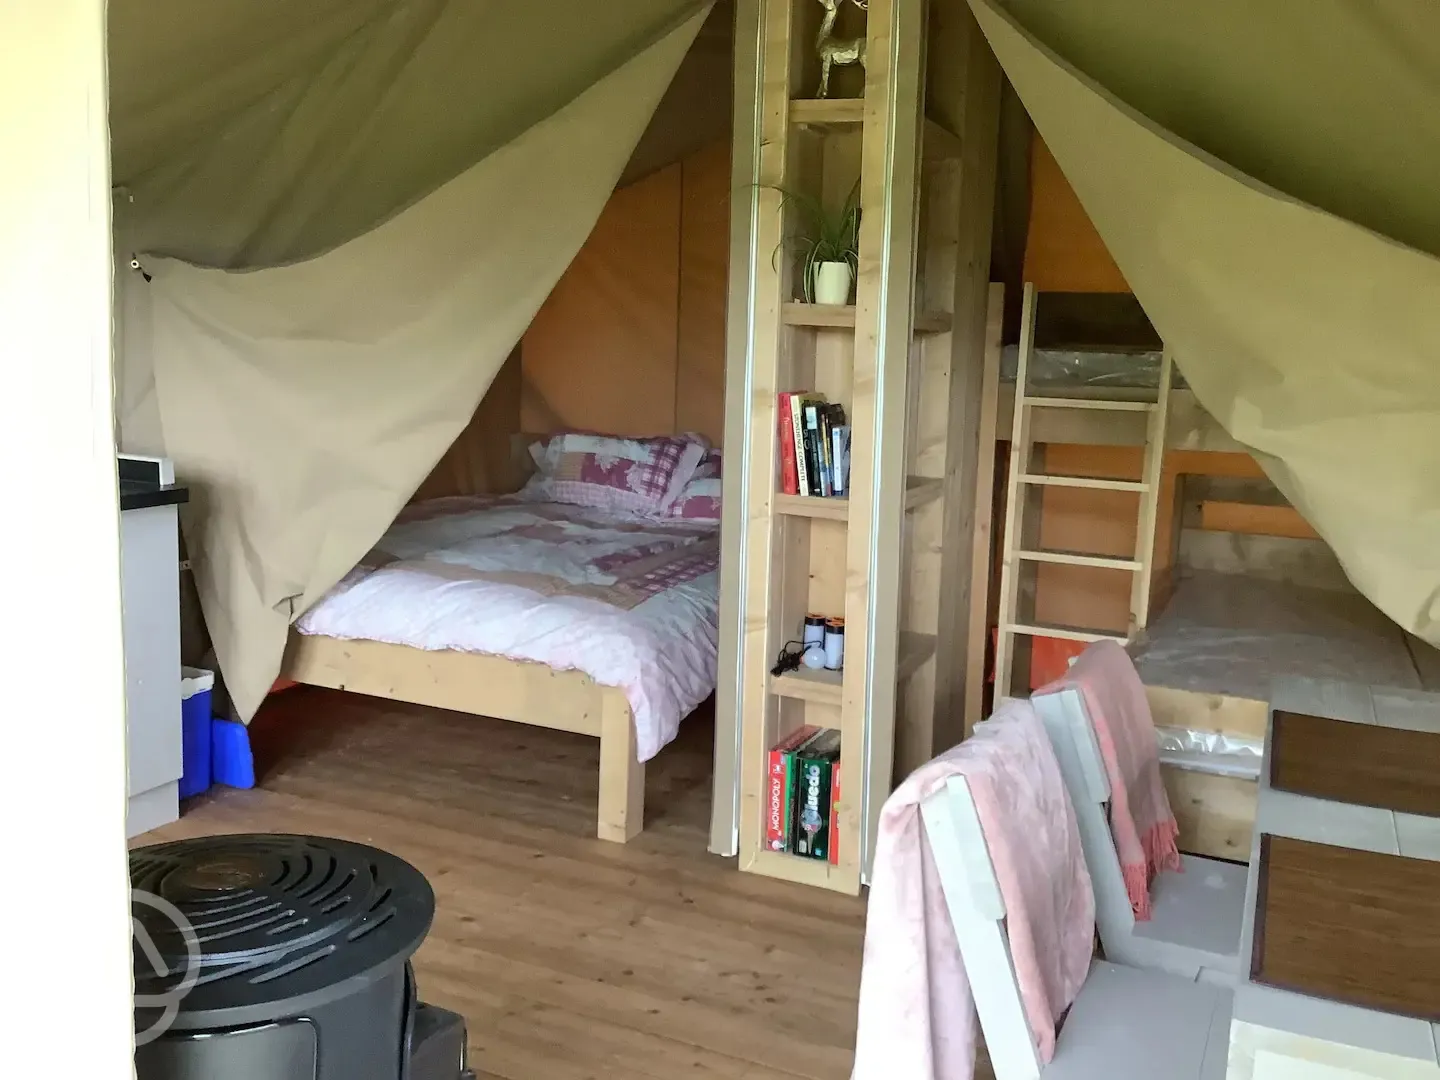 Safari Tent beds